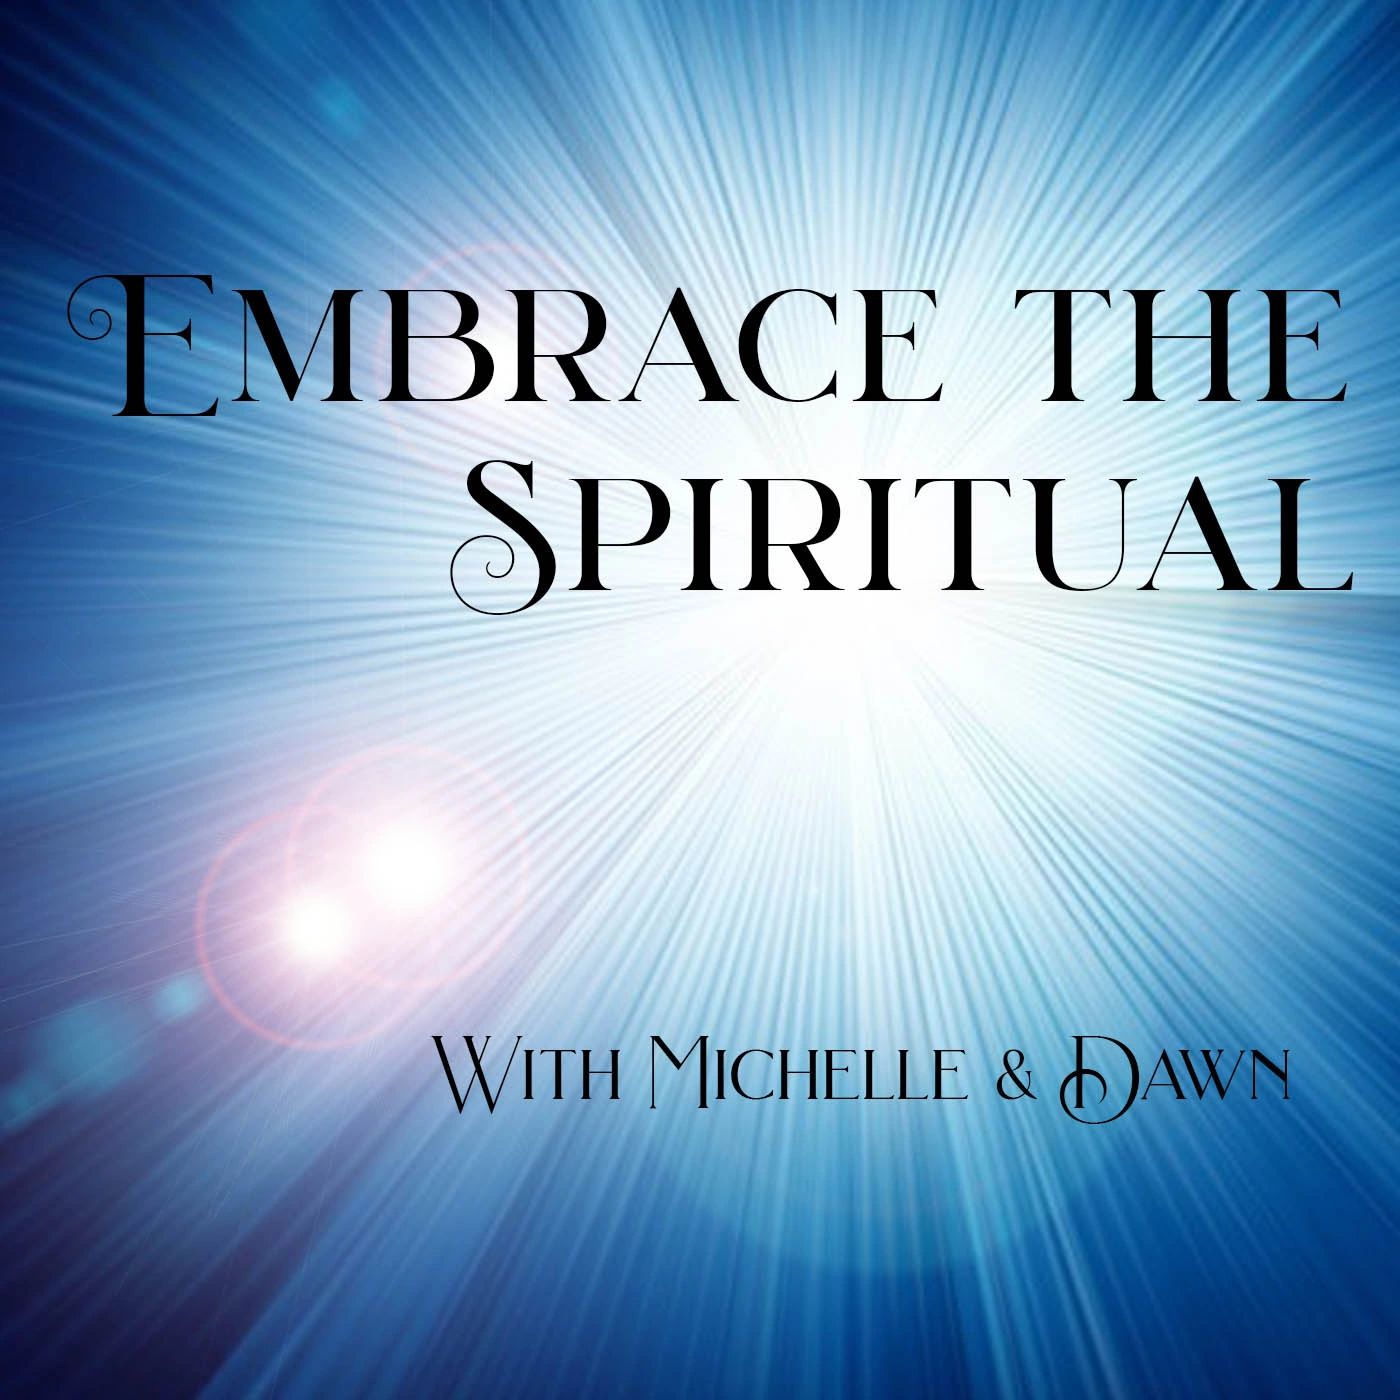 Embrace the Spiritual, Embrace the Spiritual Podcast